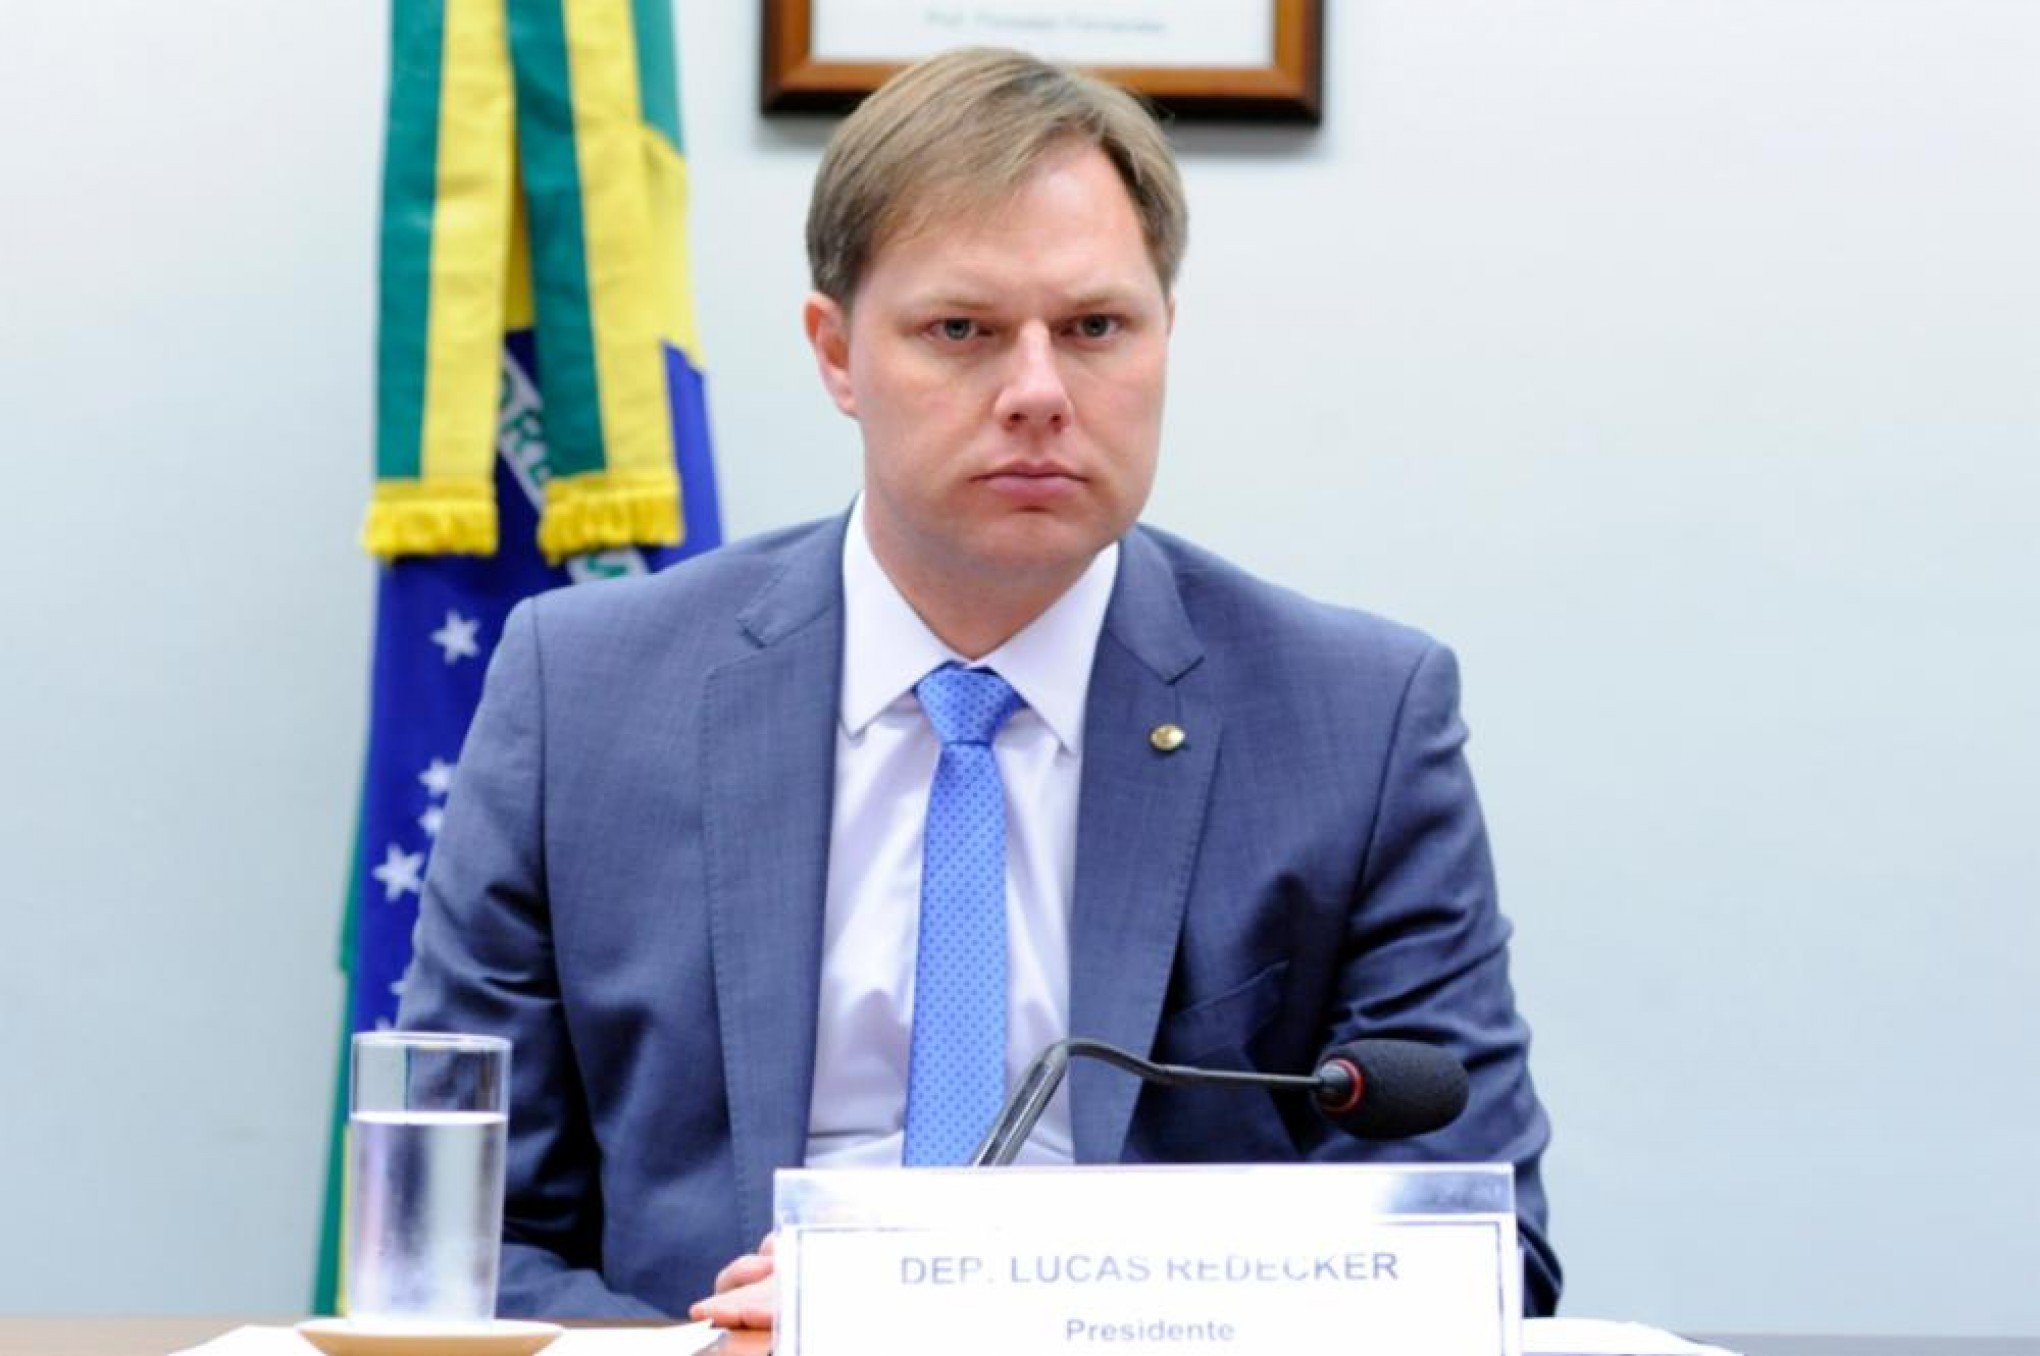 DESONERAÇÃO DA FOLHA: "Vamos derrubar este veto tanto no Senado quanto na Câmara", diz Redecker sobre decisão de Lula